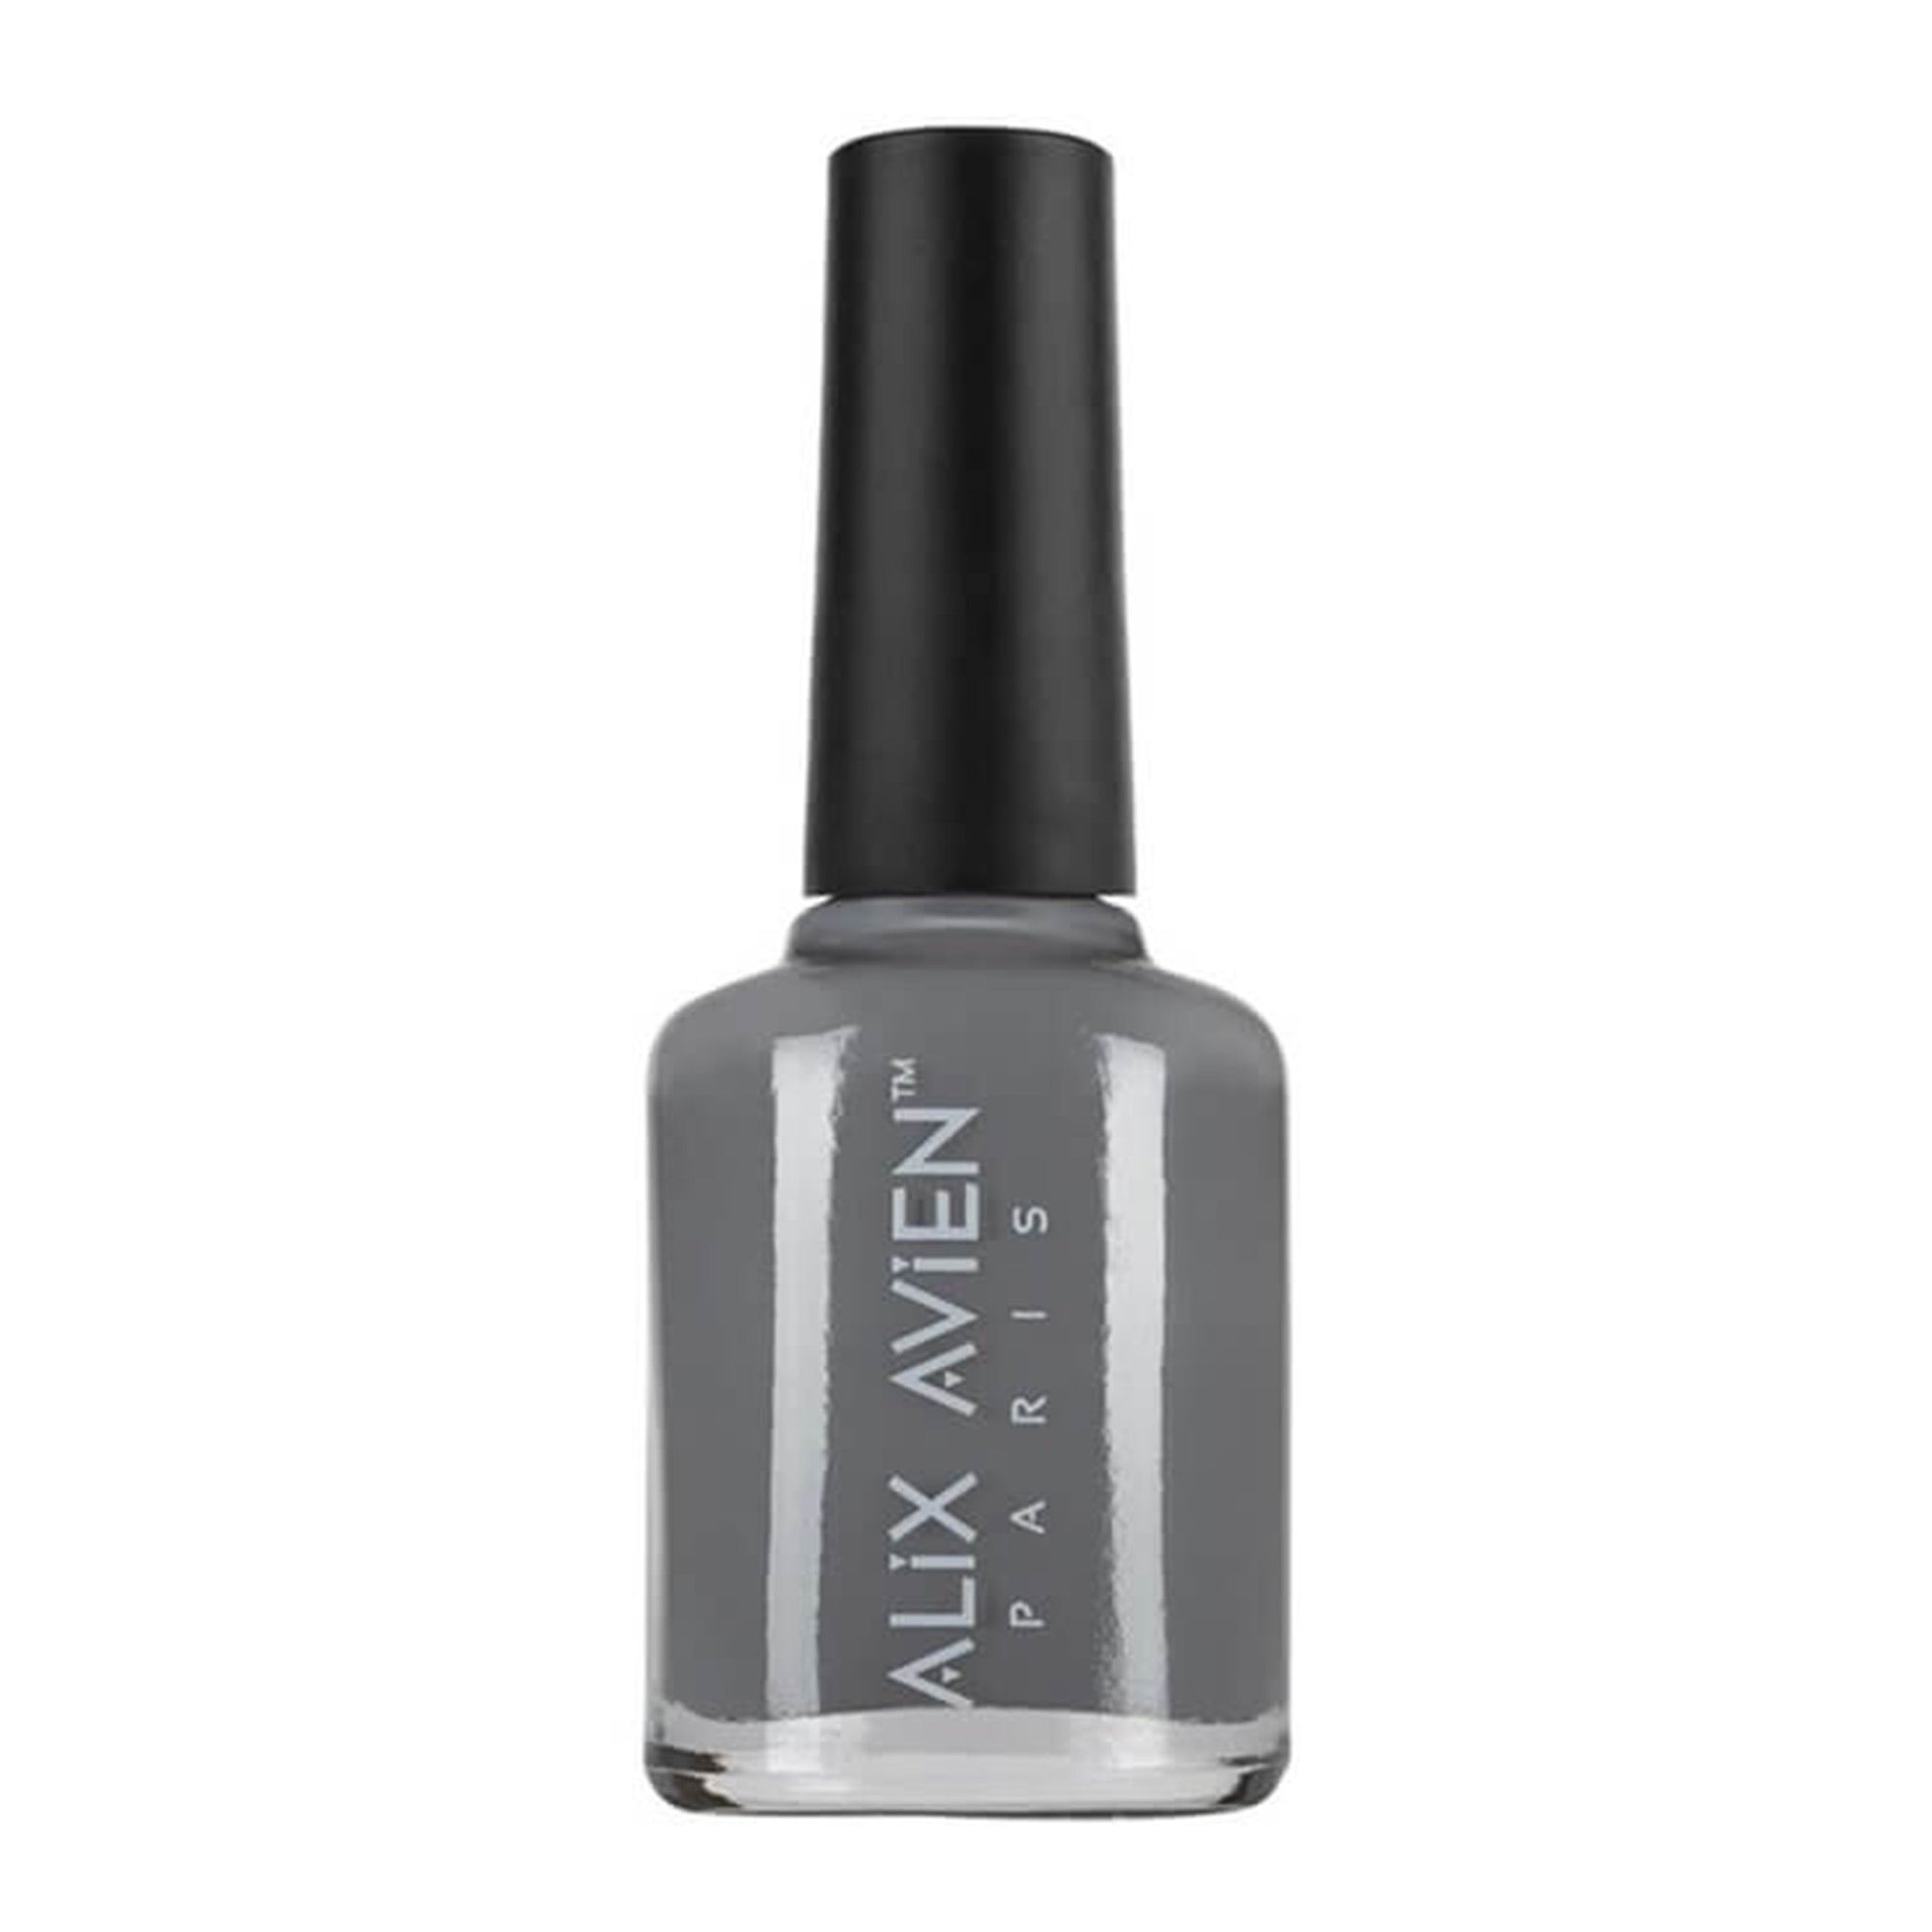 Alix Avien - Nail Polish No.41 (Grey)